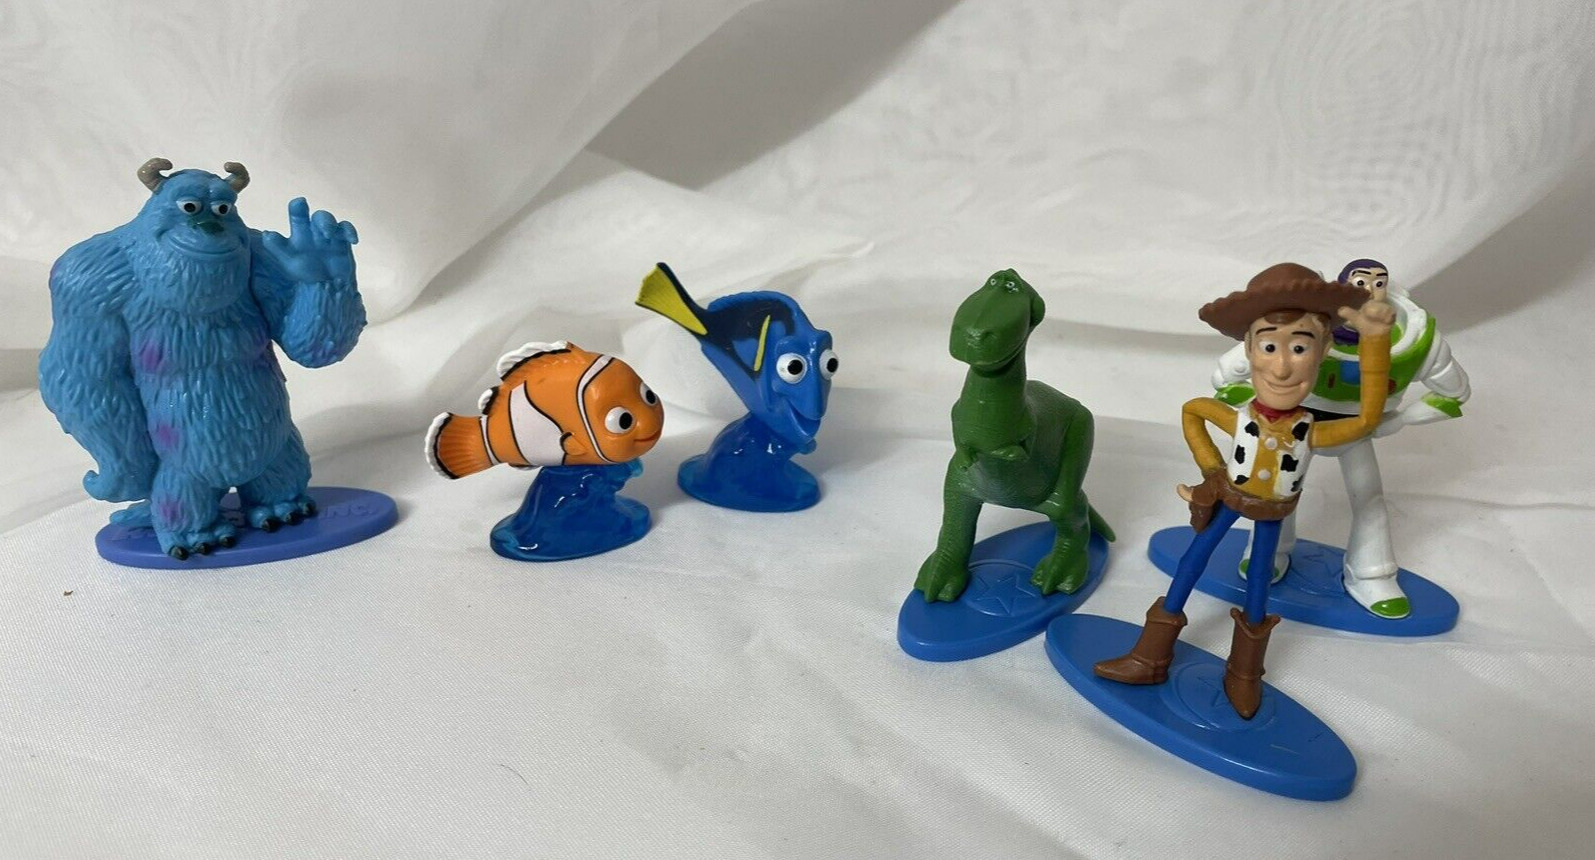 2019 Mattel Disney/Pixar Figures Toy Story, Finding Nemo, Monsters Inc.